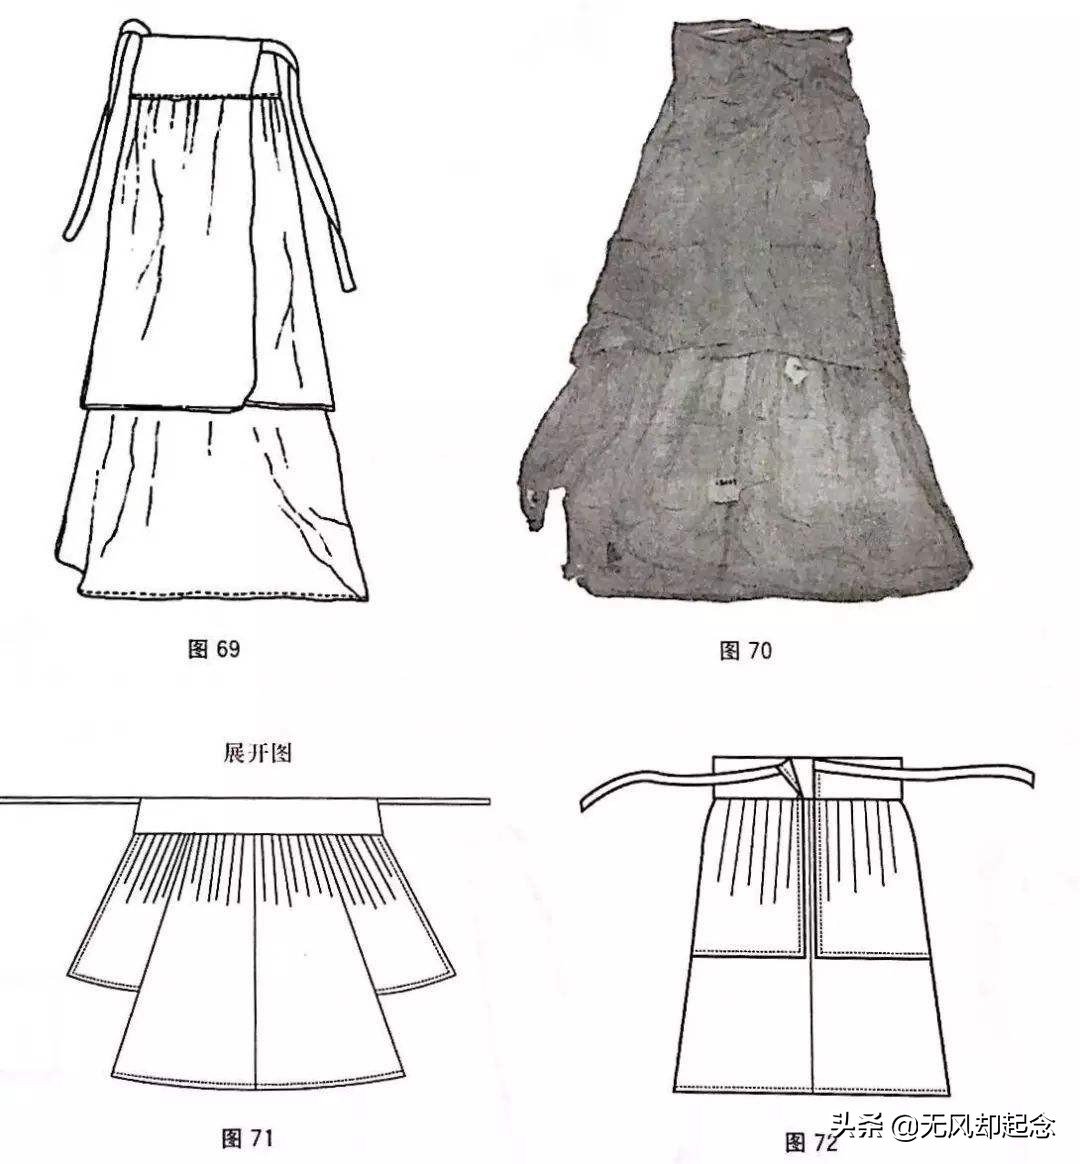 福建出土宋朝17岁贵妇墓，发现超薄短裙，颠覆人们对当时女性印象